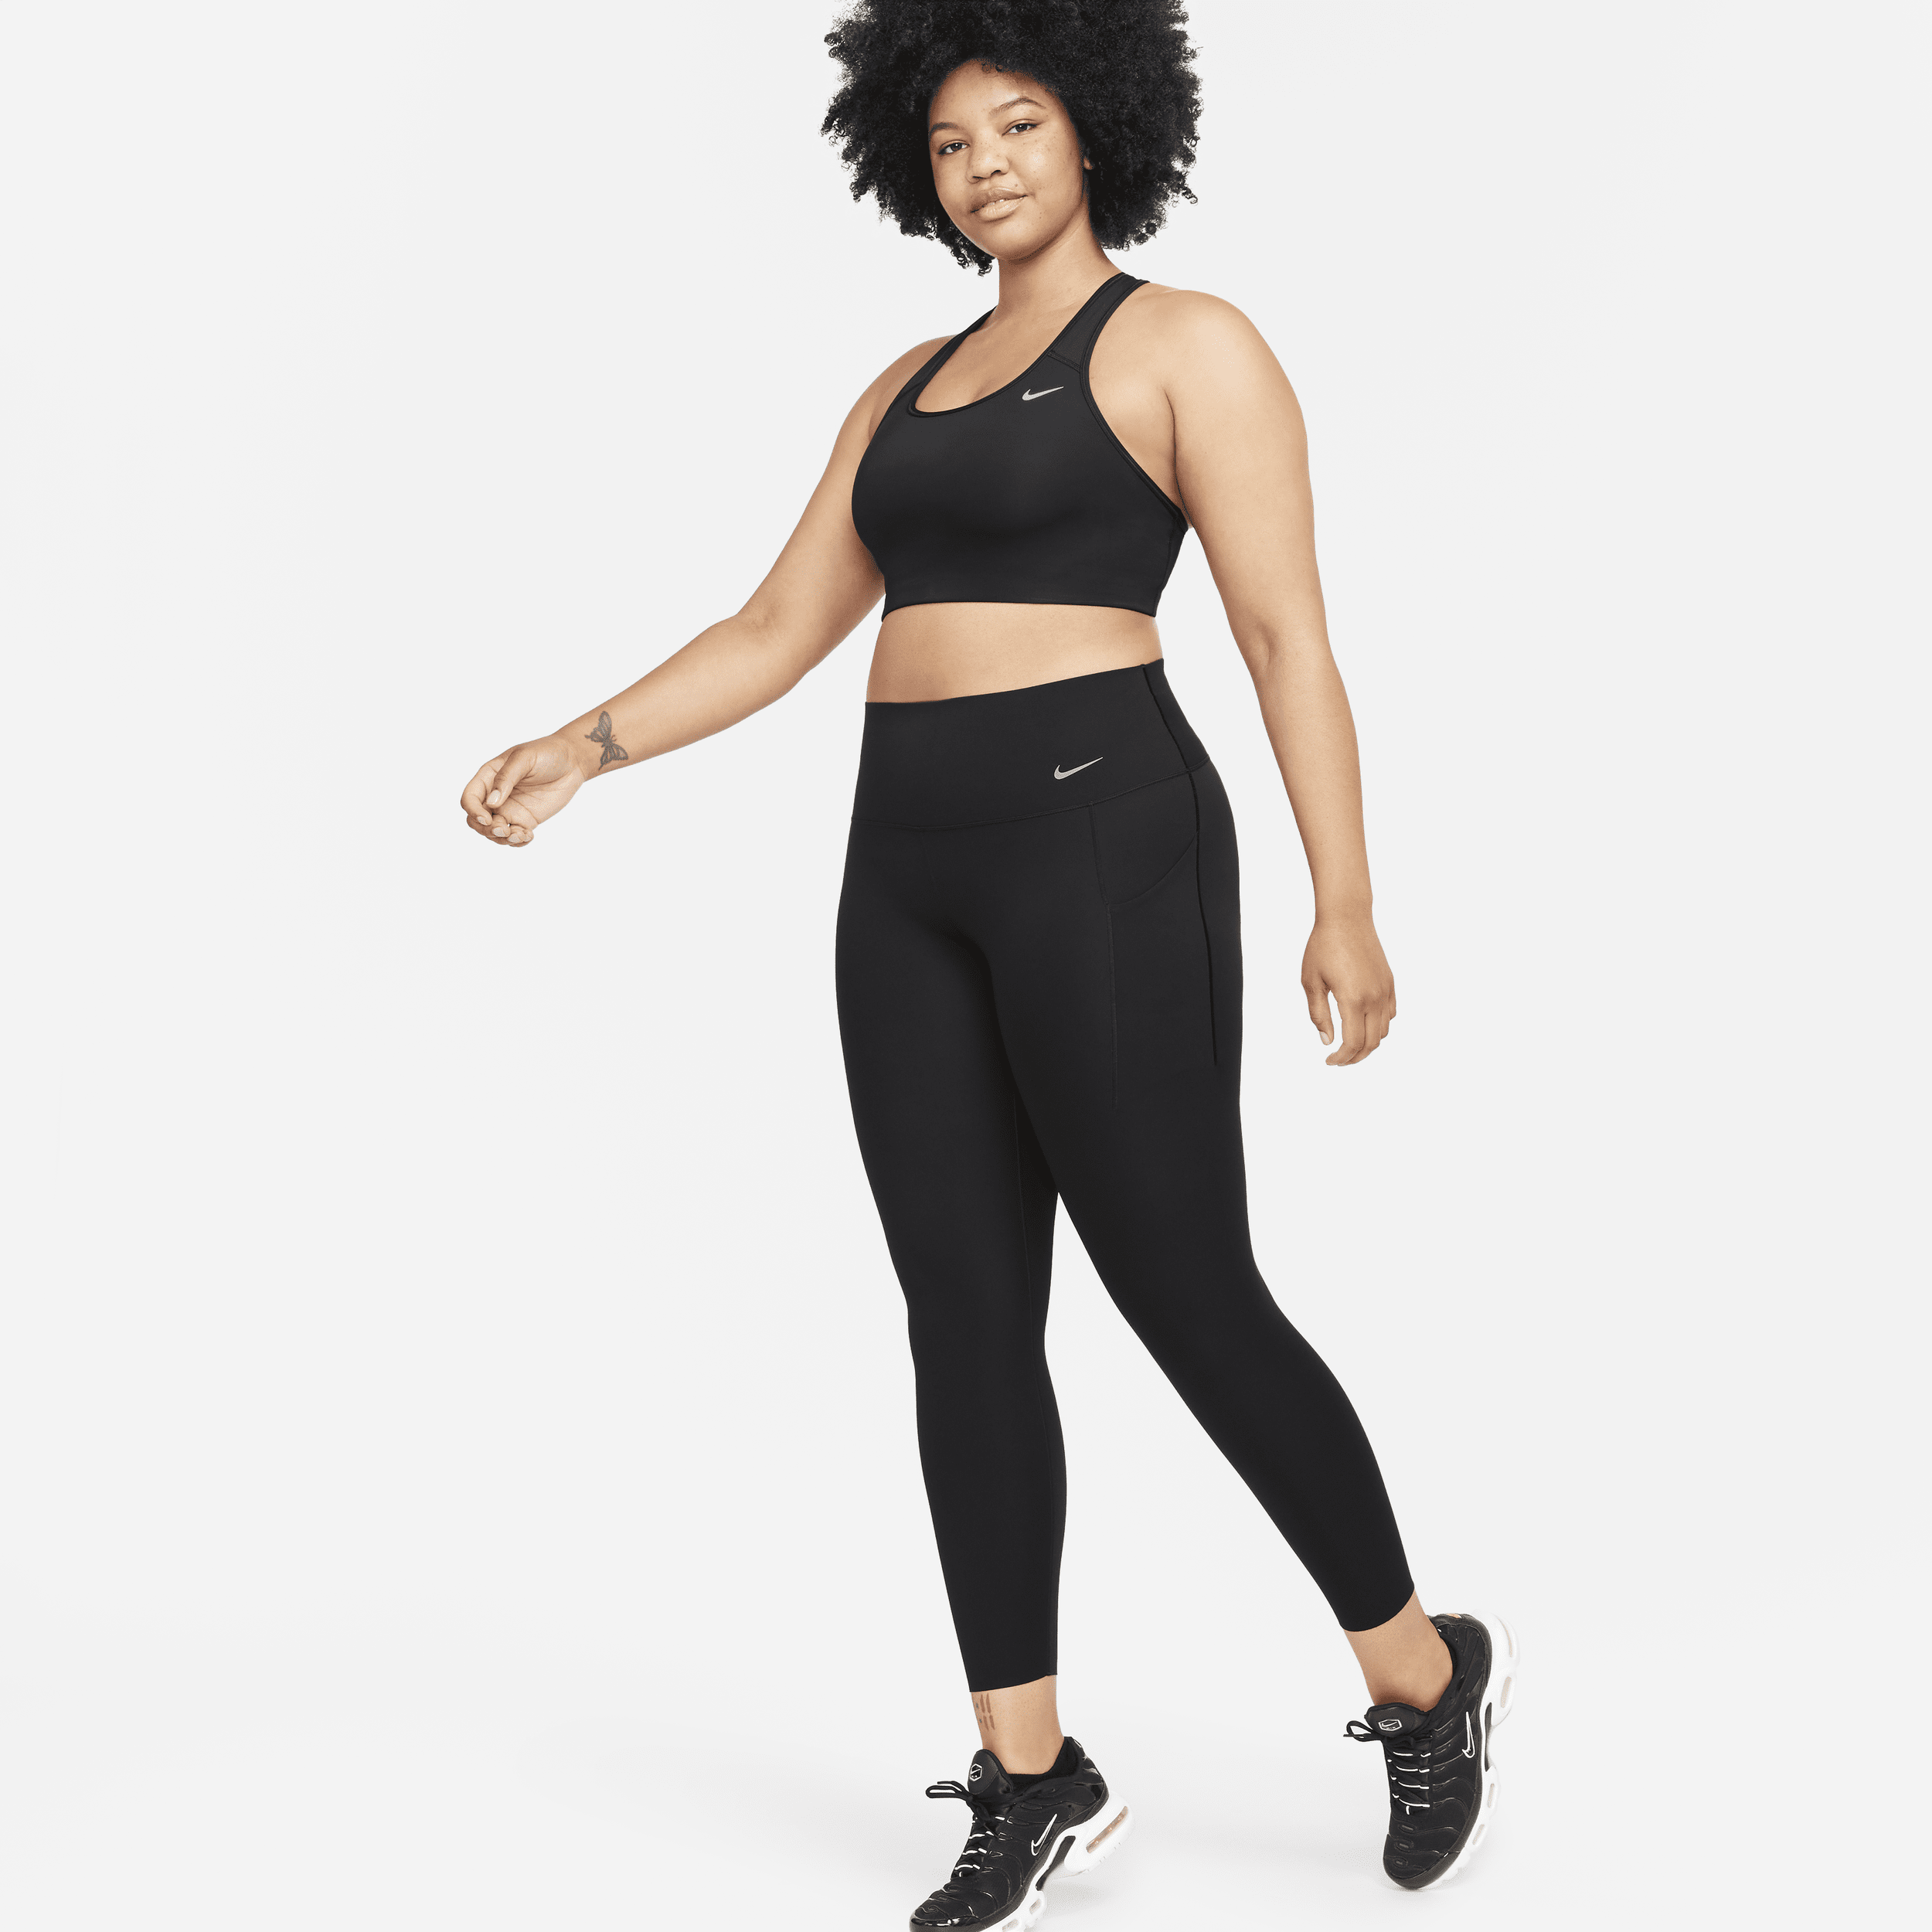 Nike Universa-leggings i 7/8 længde med medium støtte, høj talje og lommer til kvinder - sort